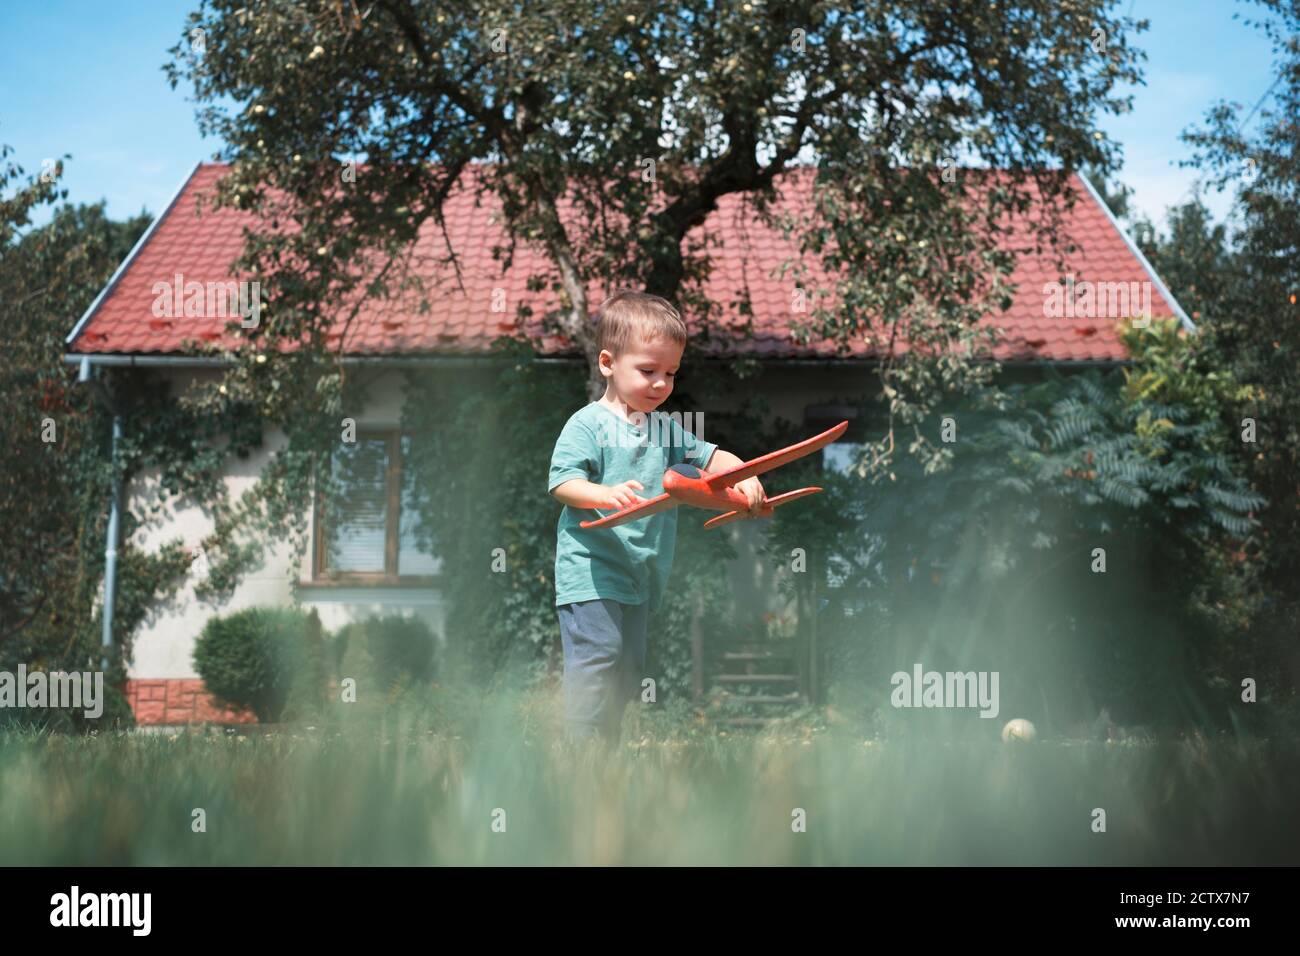 Glückliches Kind spielt mit roten Flugzeug auf Rasen in der Nähe seiner Zu Hause Stockfoto